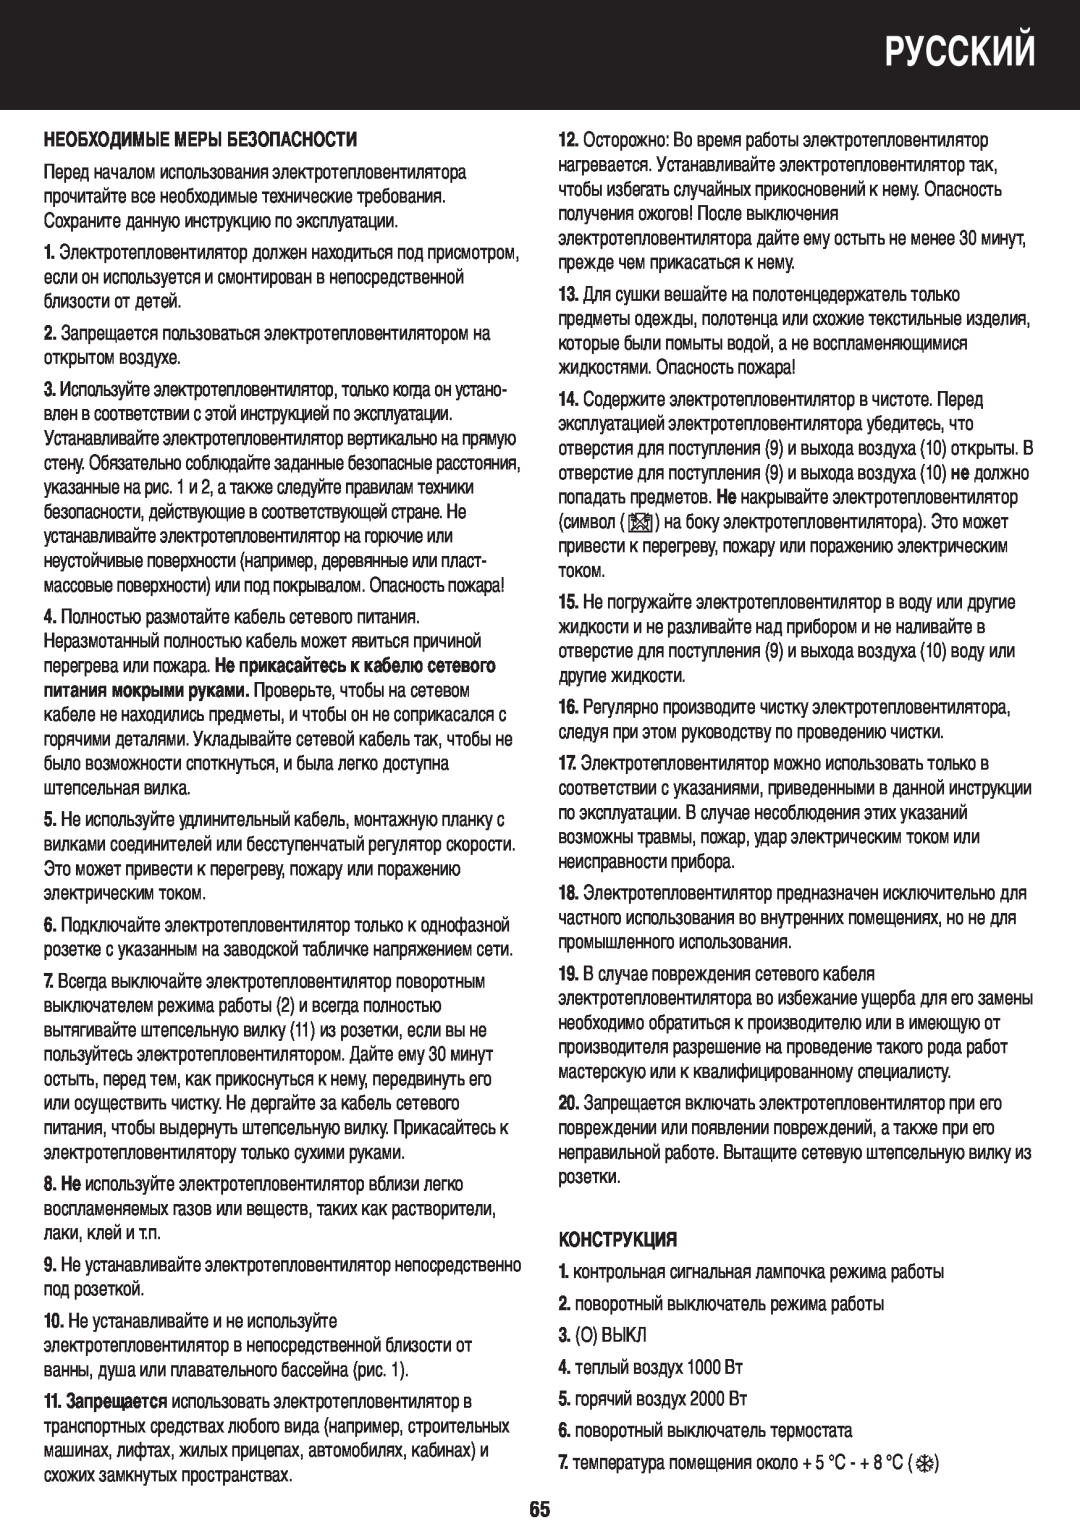 Honeywell BH-777FTE manual do utilizador Русский, Необходимые Меры Безопасности, Конструкция 